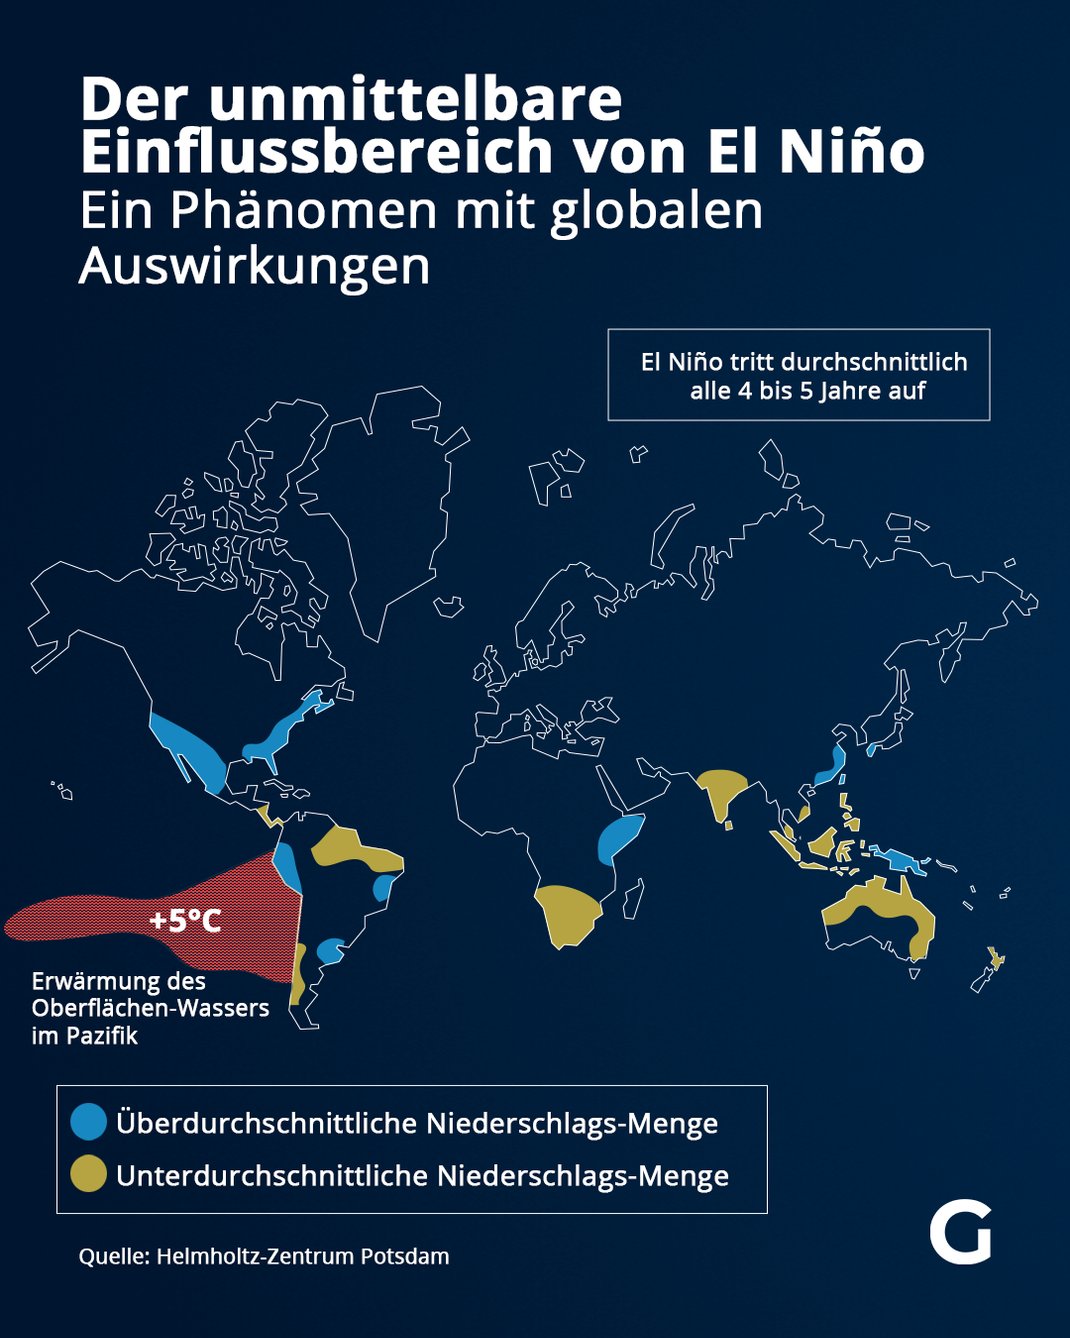 Der unmittelbare Einflussbereich von El Niño - Ein Phänomen mit globalen Auswirkungen